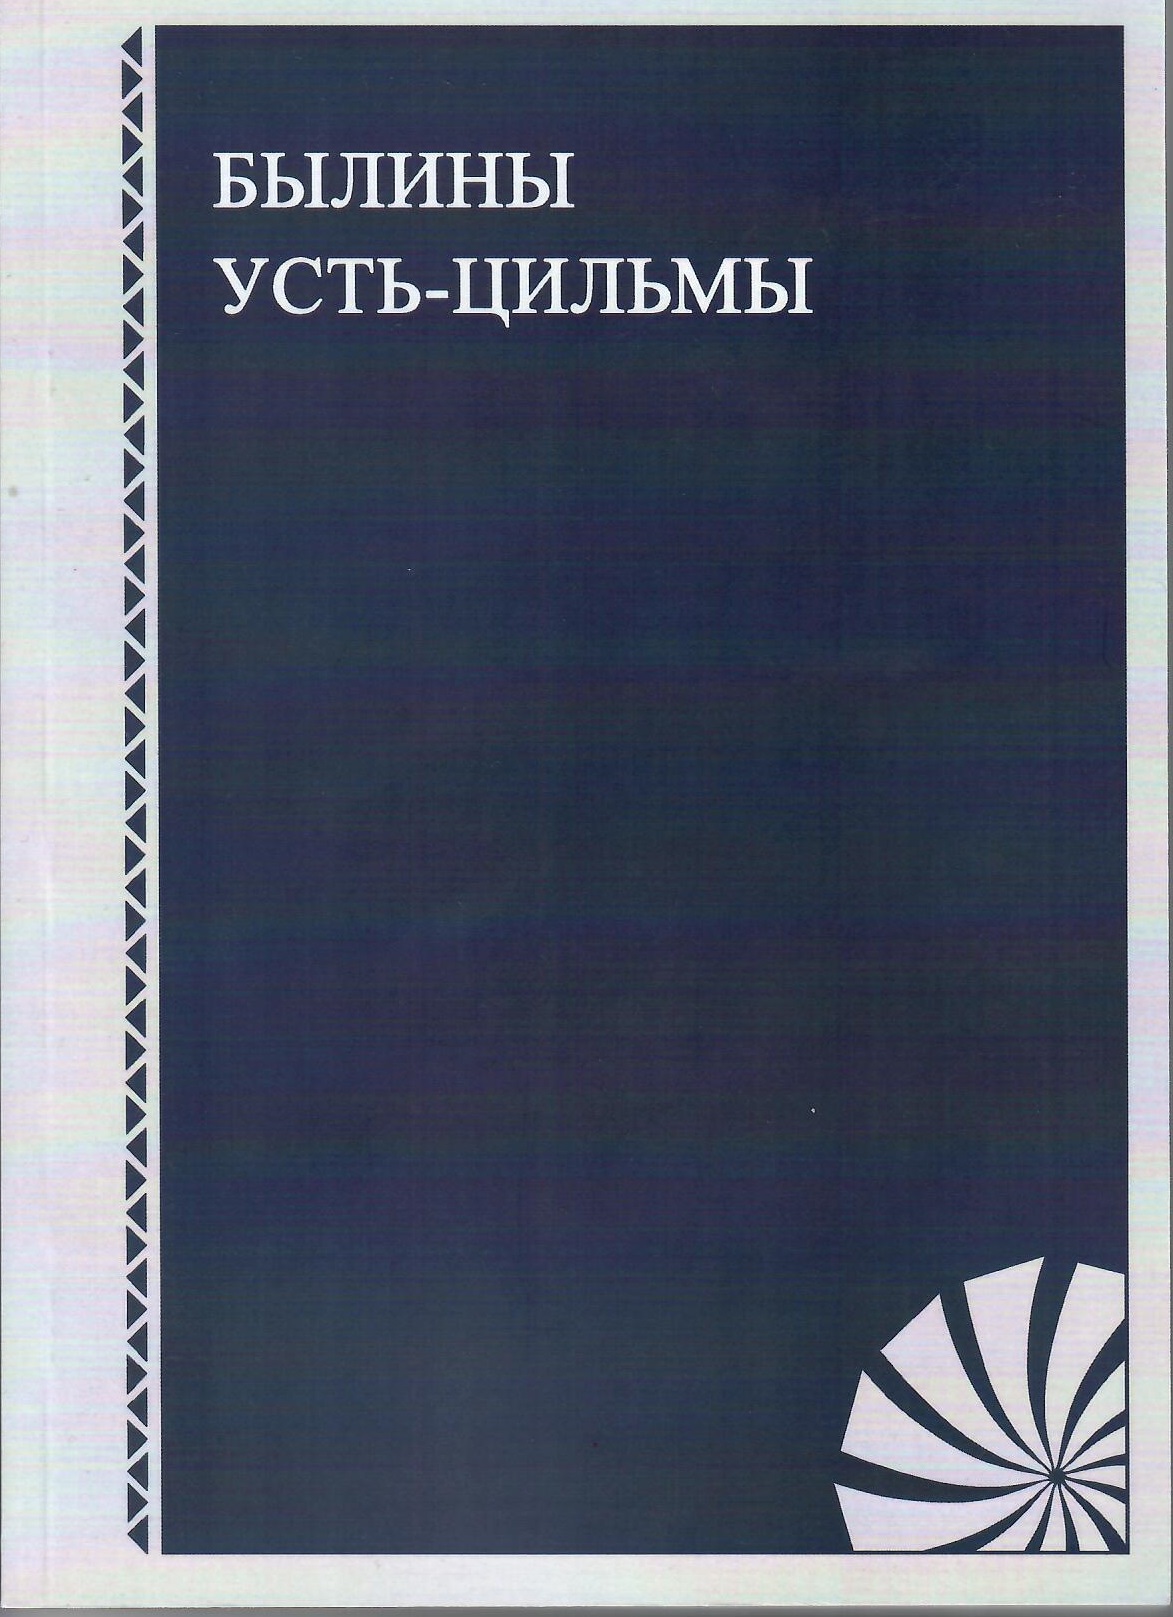 Cover of Былины Усть-Цильмы: справочно-библиографические материалы